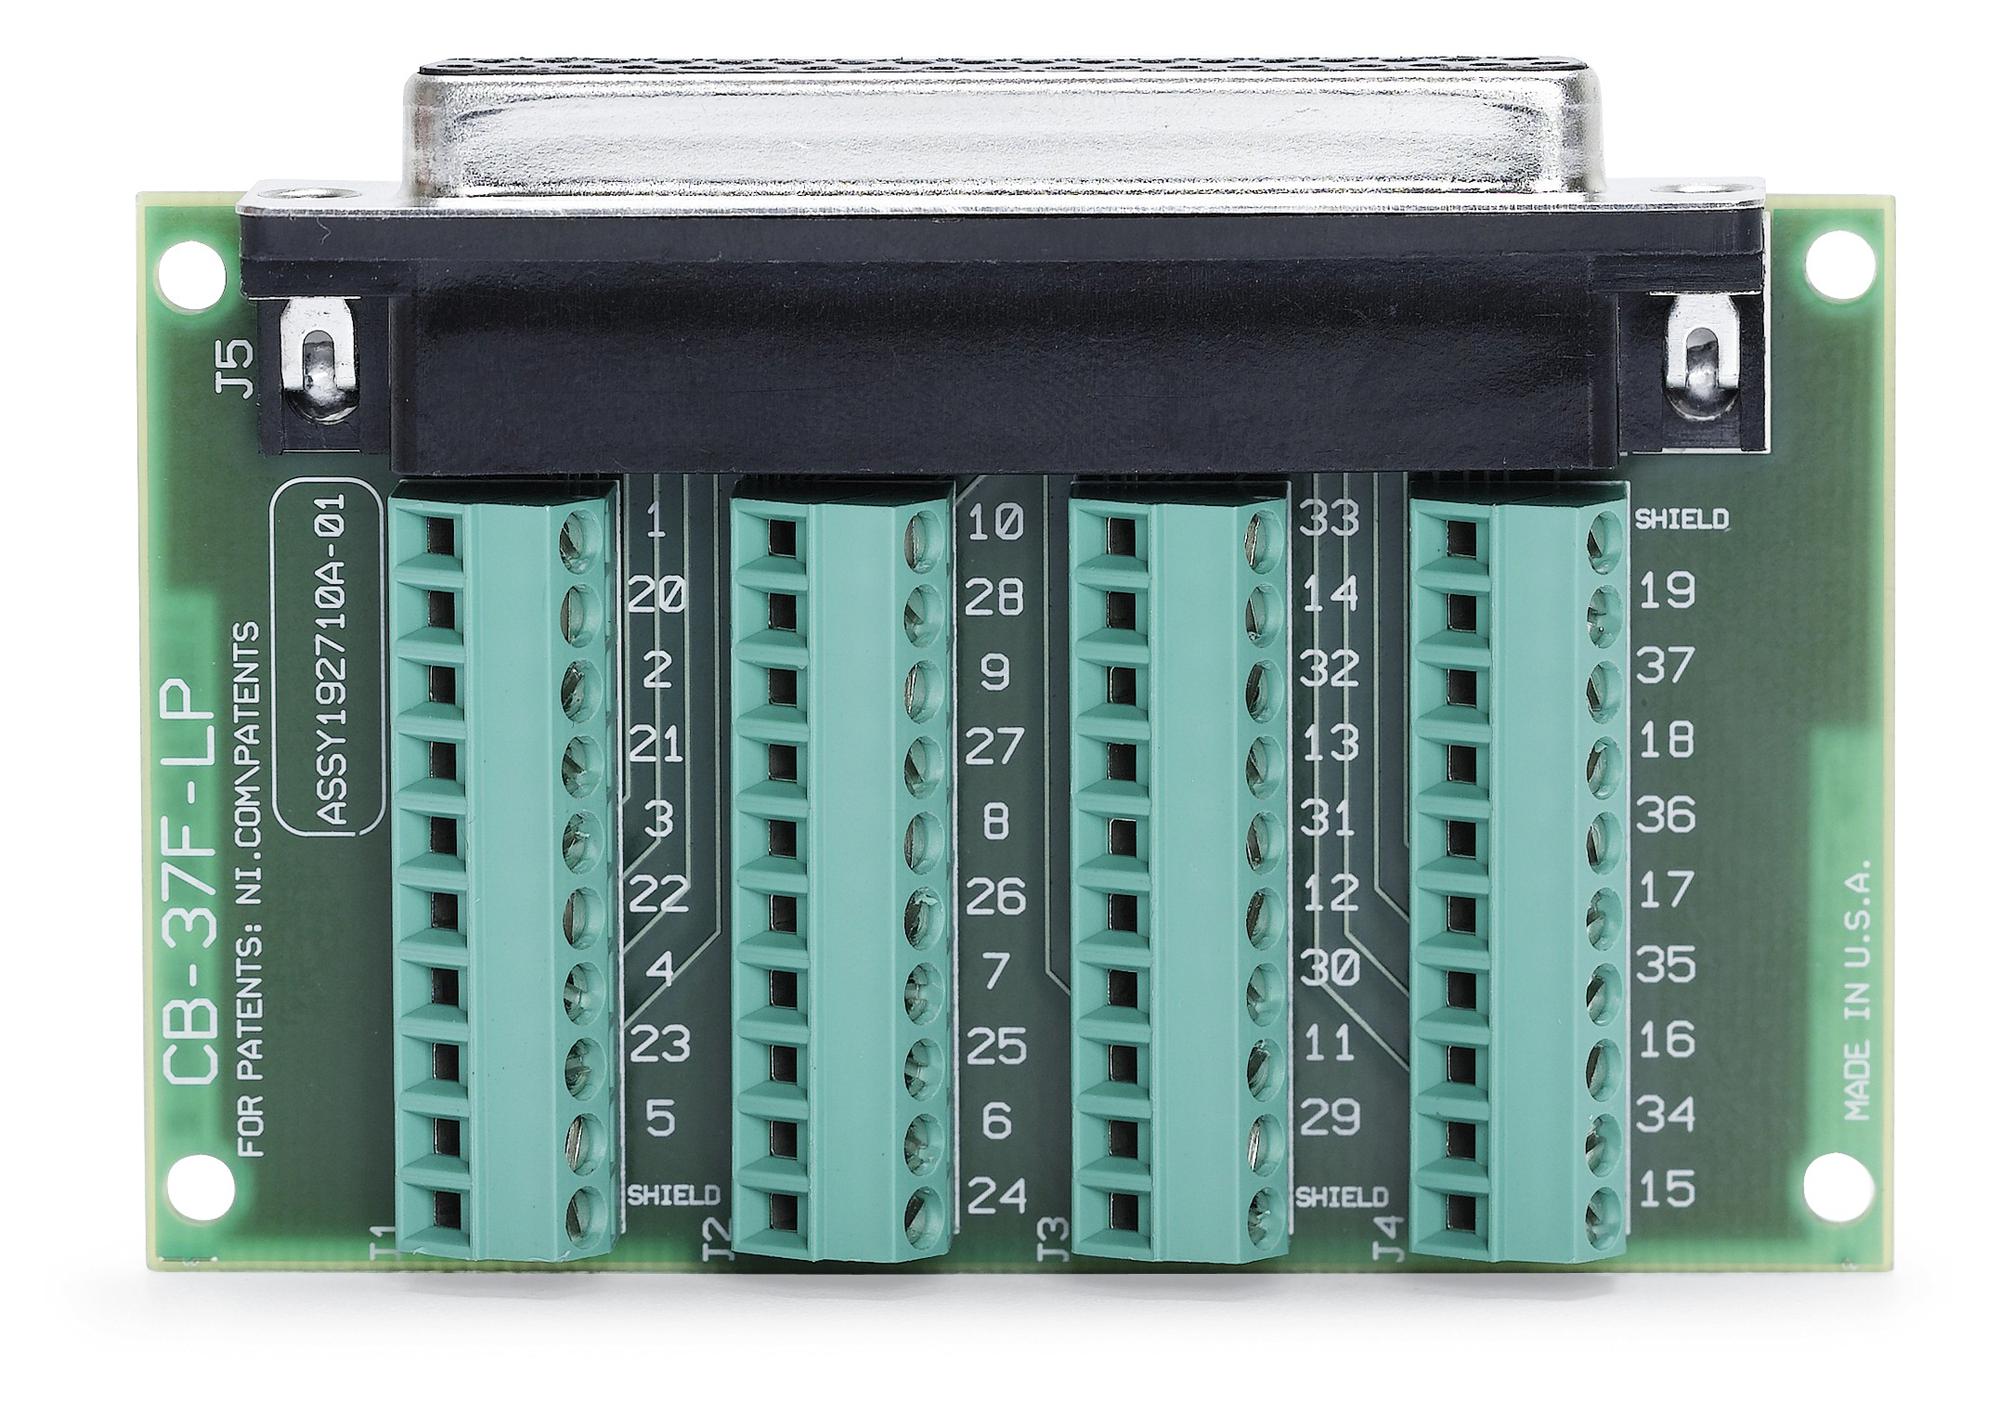 NI 779016-01 NI-9935, D-Sub Connector Kit